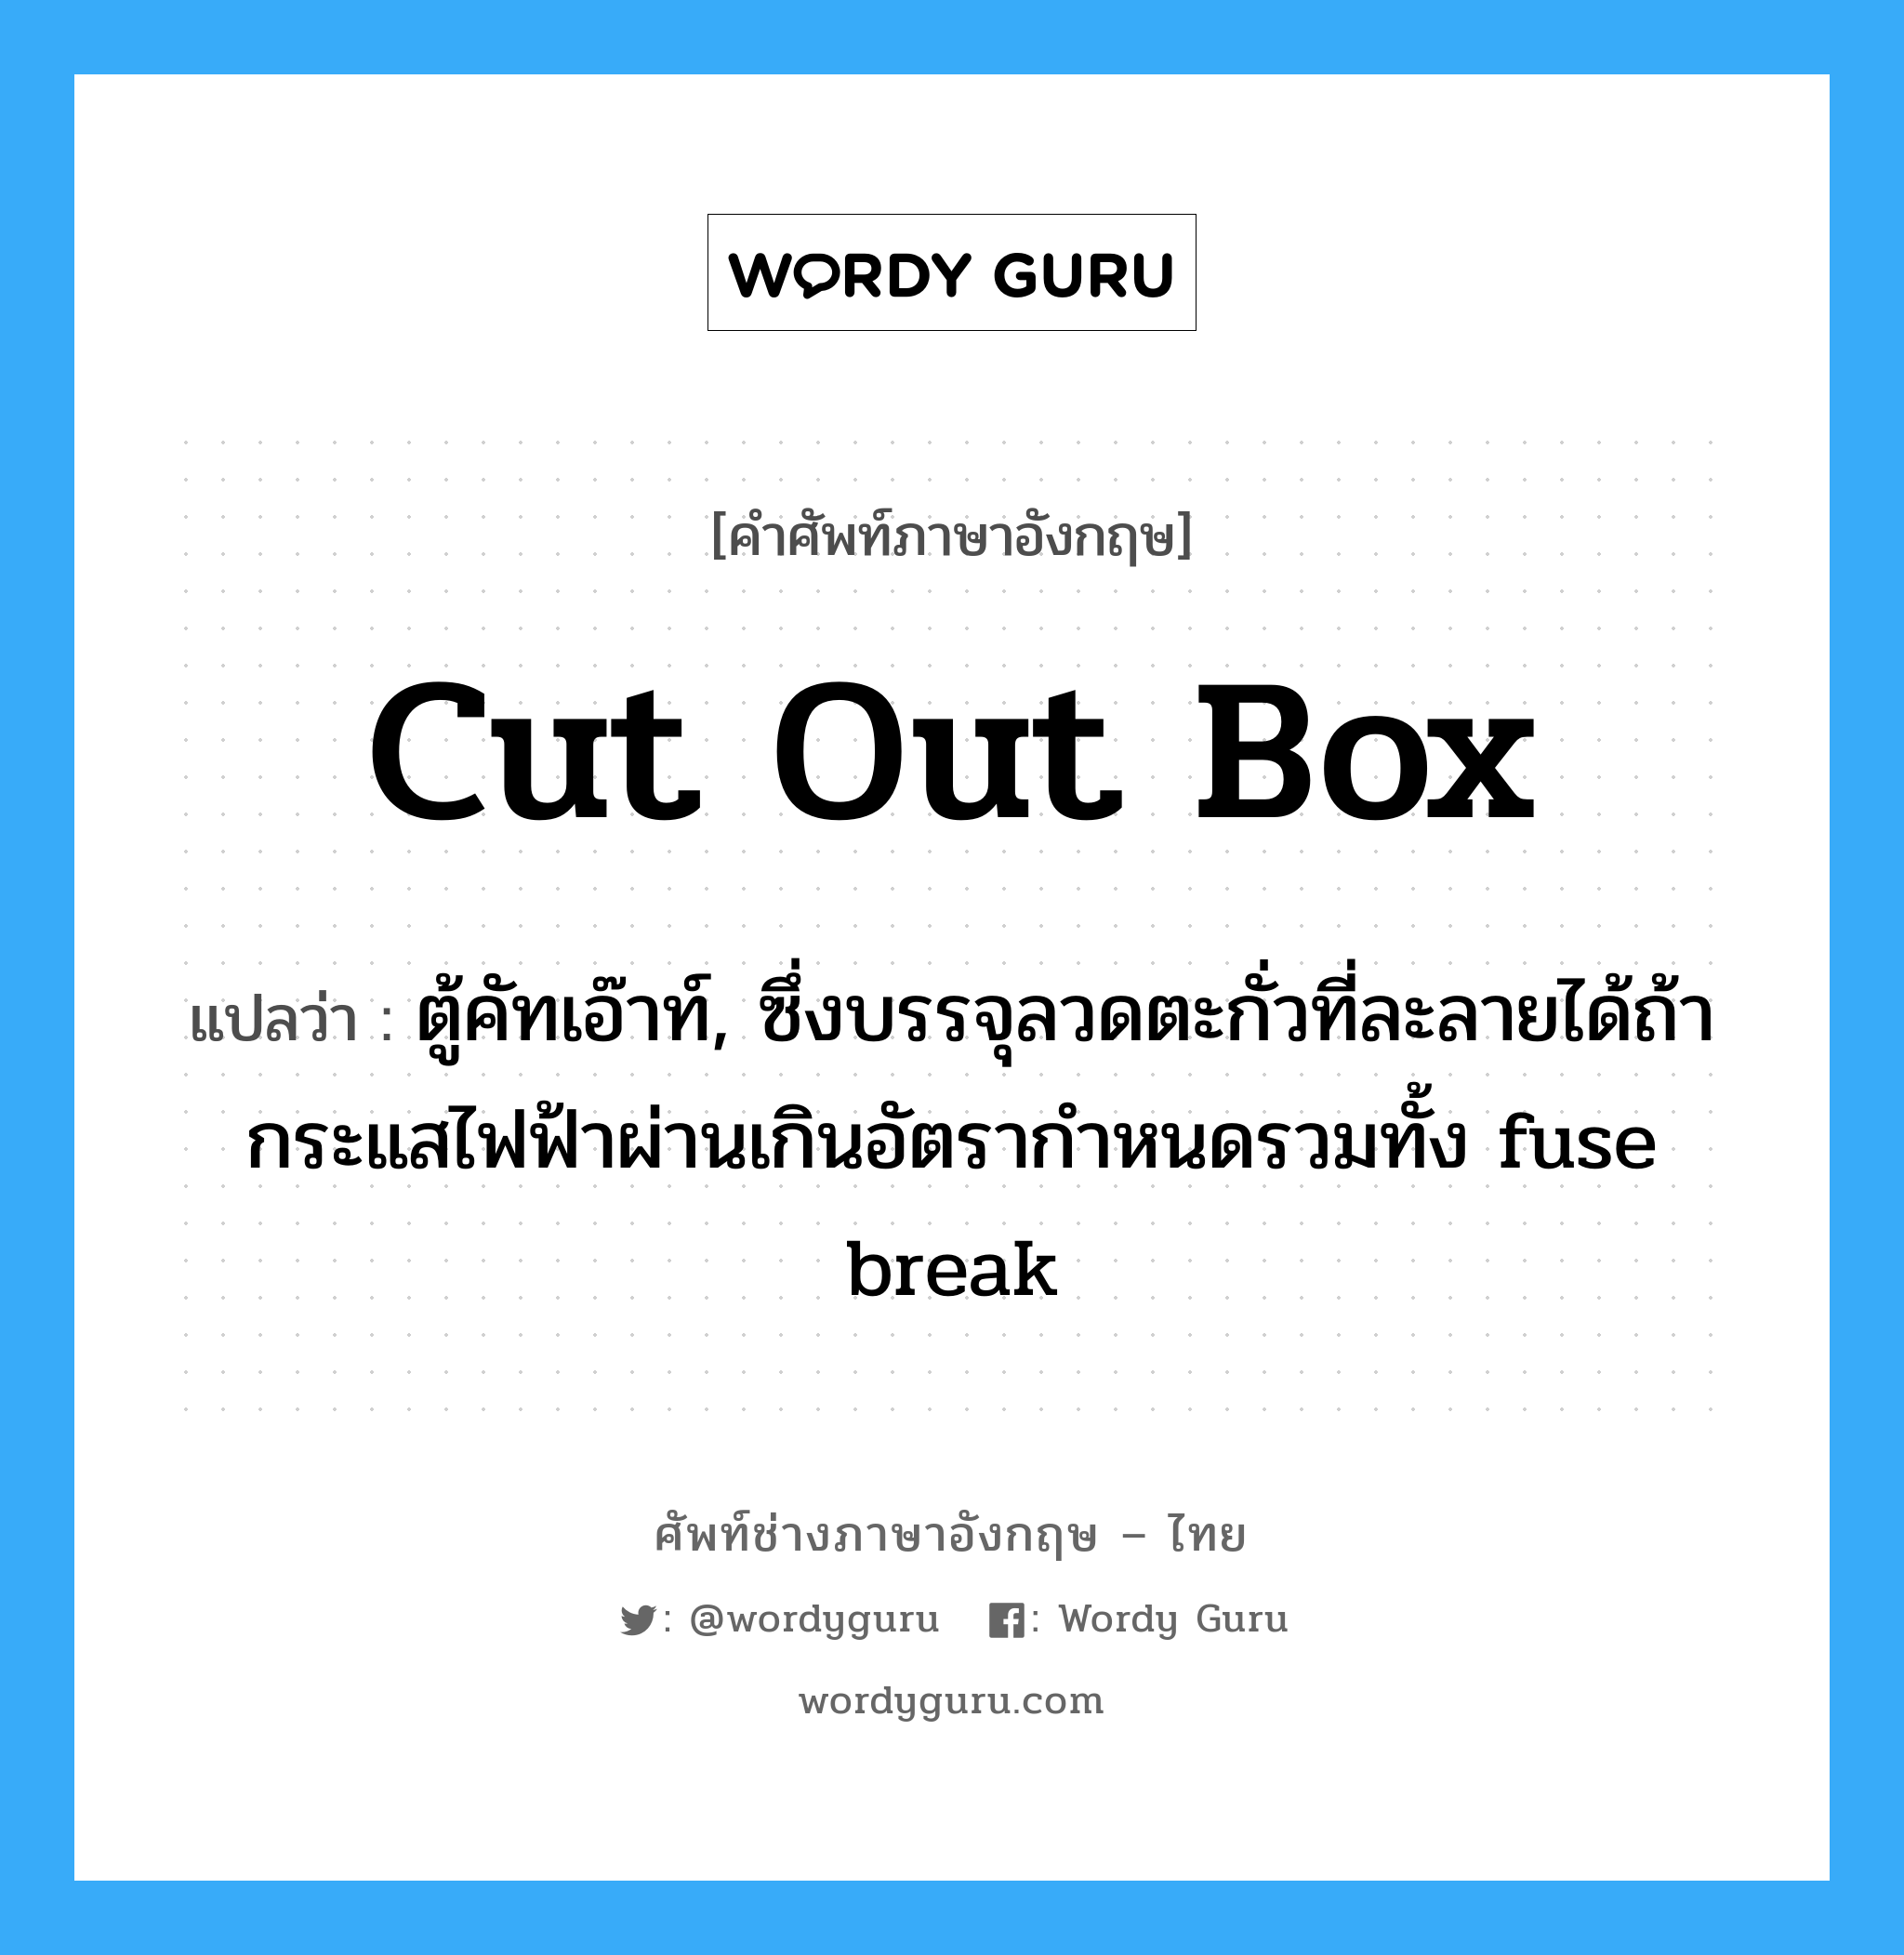 cut out box แปลว่า?, คำศัพท์ช่างภาษาอังกฤษ - ไทย cut out box คำศัพท์ภาษาอังกฤษ cut out box แปลว่า ตู้คัทเอ๊าท์, ซึ่งบรรจุลวดตะกั่วที่ละลายได้ถ้ากระแสไฟฟ้าผ่านเกินอัตรากำหนดรวมทั้ง fuse break